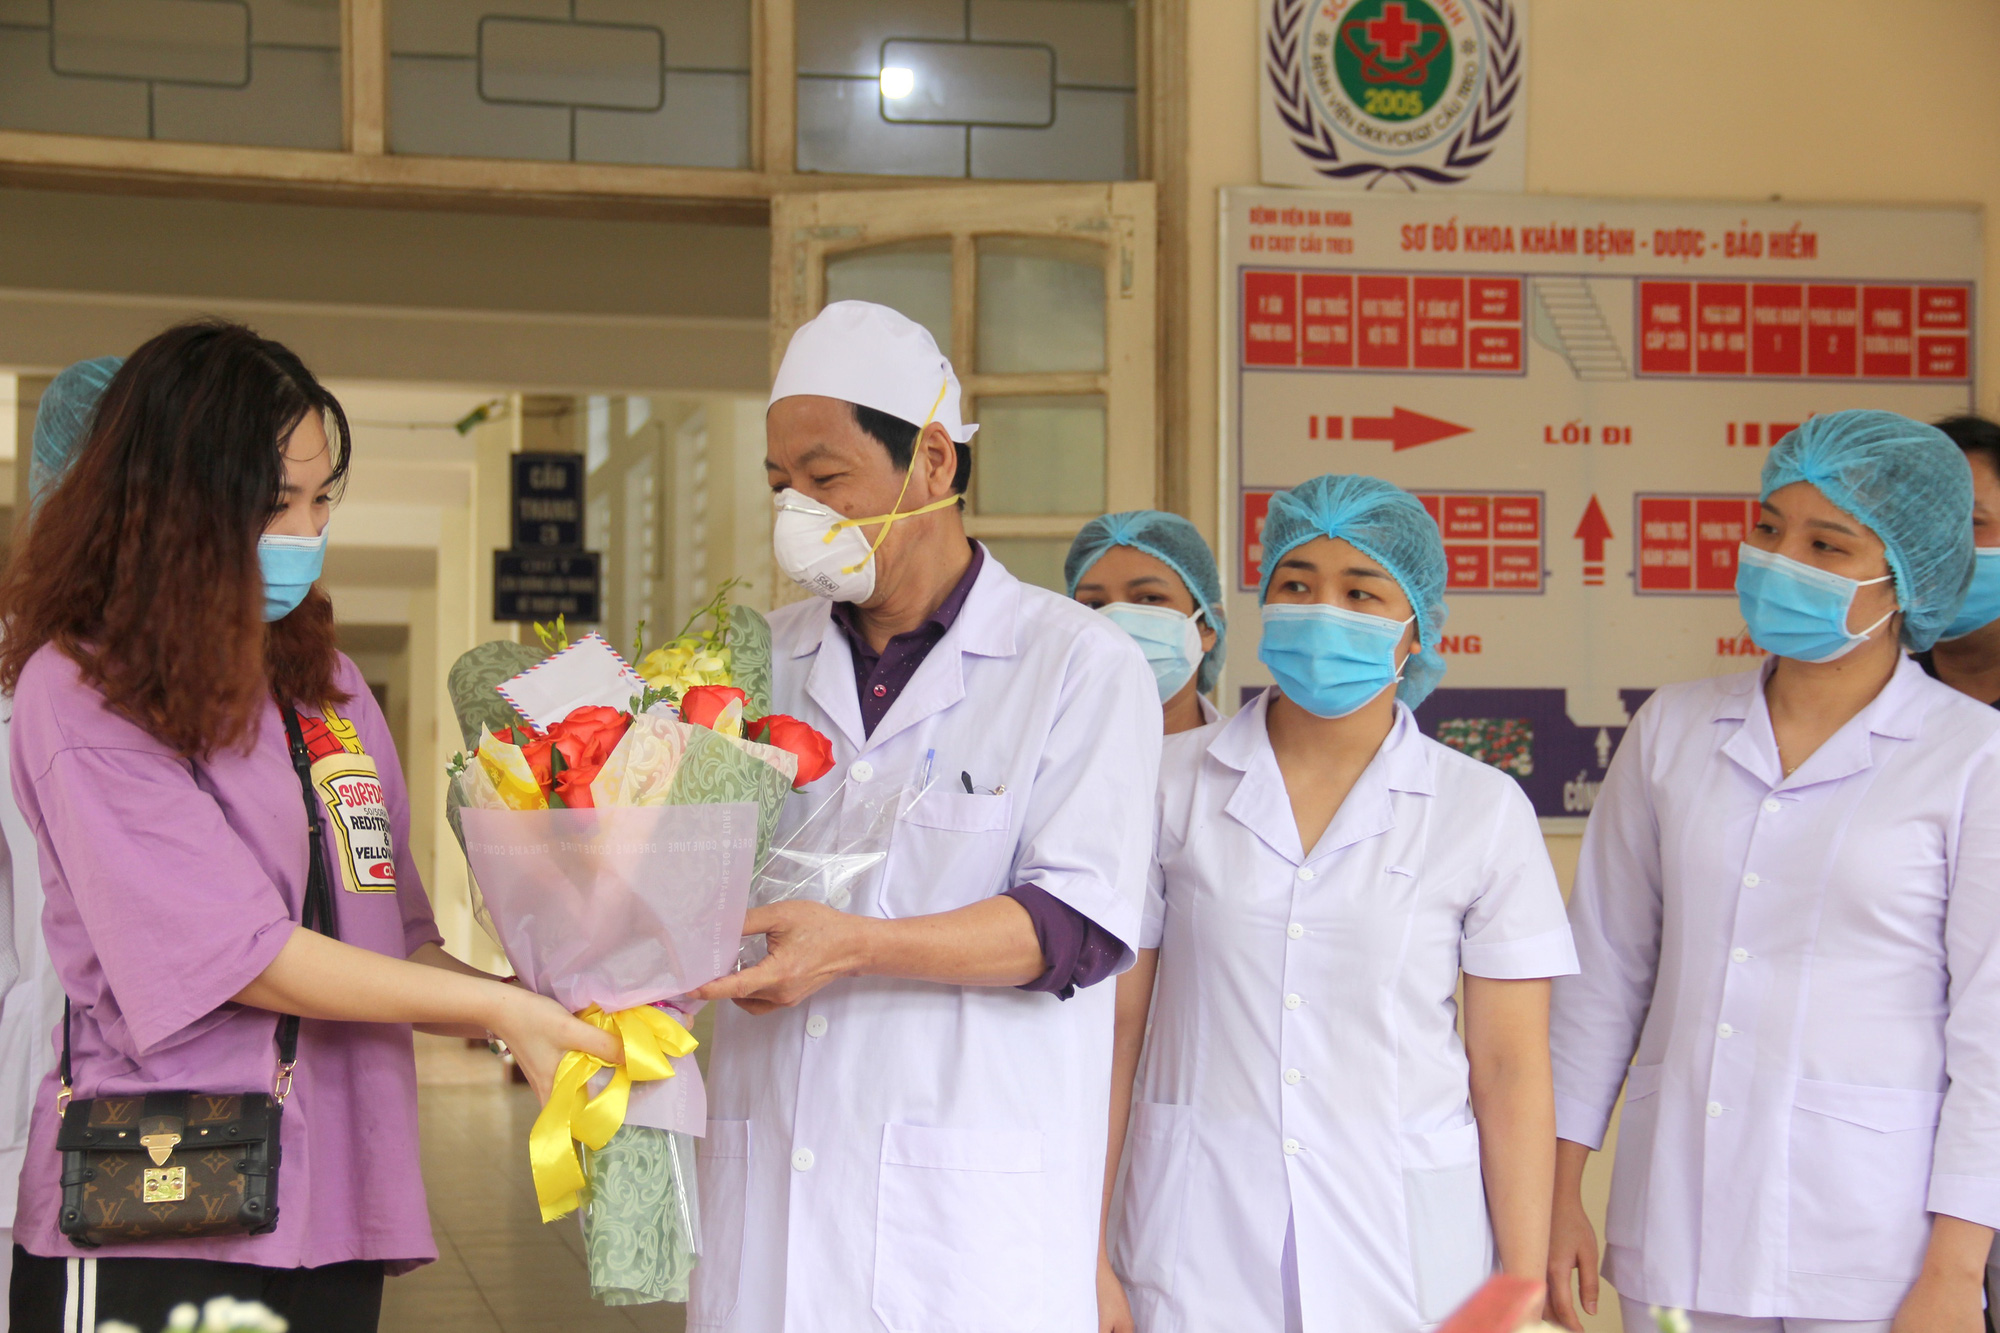 Nữ bệnh nhân nhiễm Covid-19 ở Hà Tĩnh: Liều thuốc tốt nhất là lạc quan yêu đời để chiến thắng - Ảnh 4.